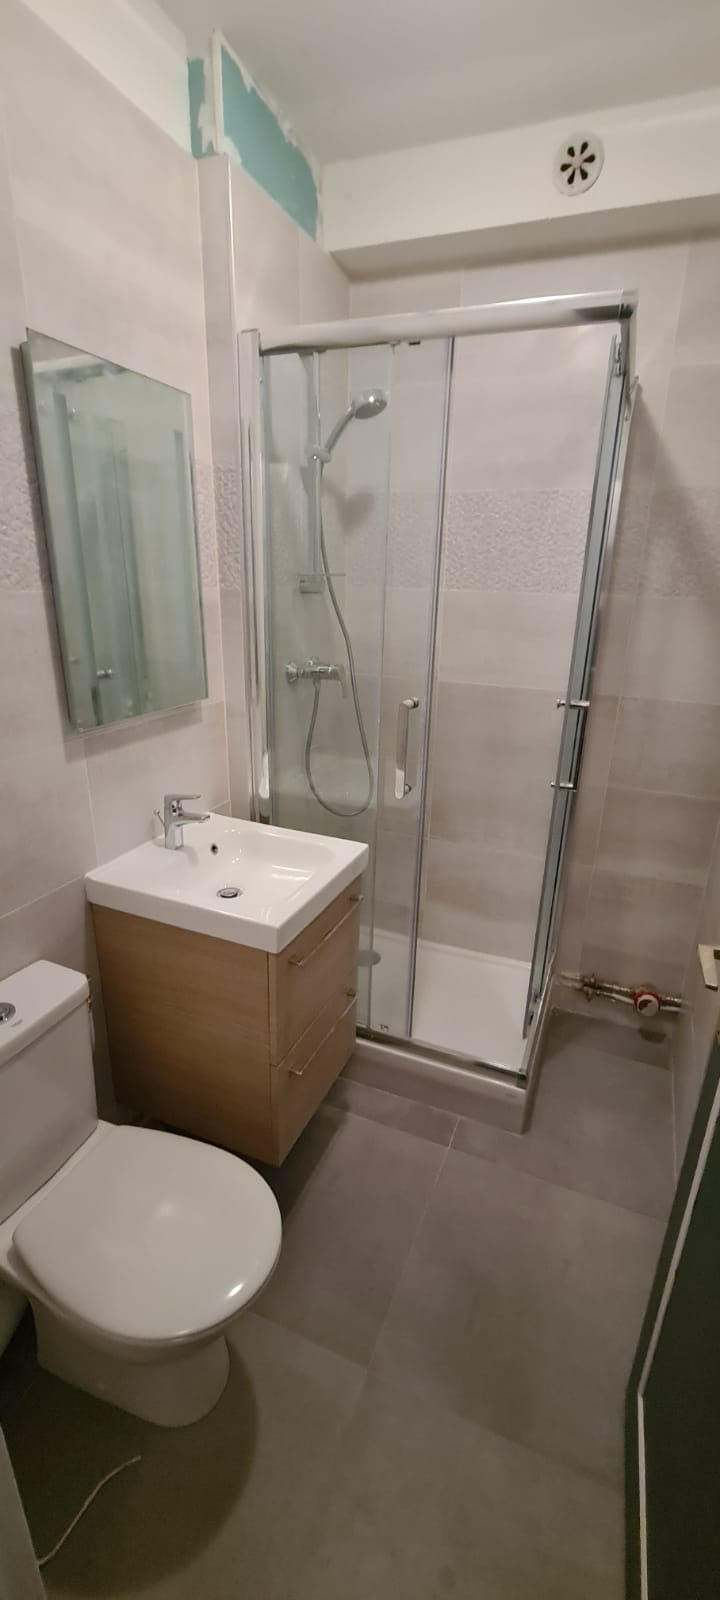 Salle de bain|Rénovation complette , douche , meuble haut , lavabo , peinture , électricité , carrelage sol , faïence à Paris 75005 , budget 10000€ .